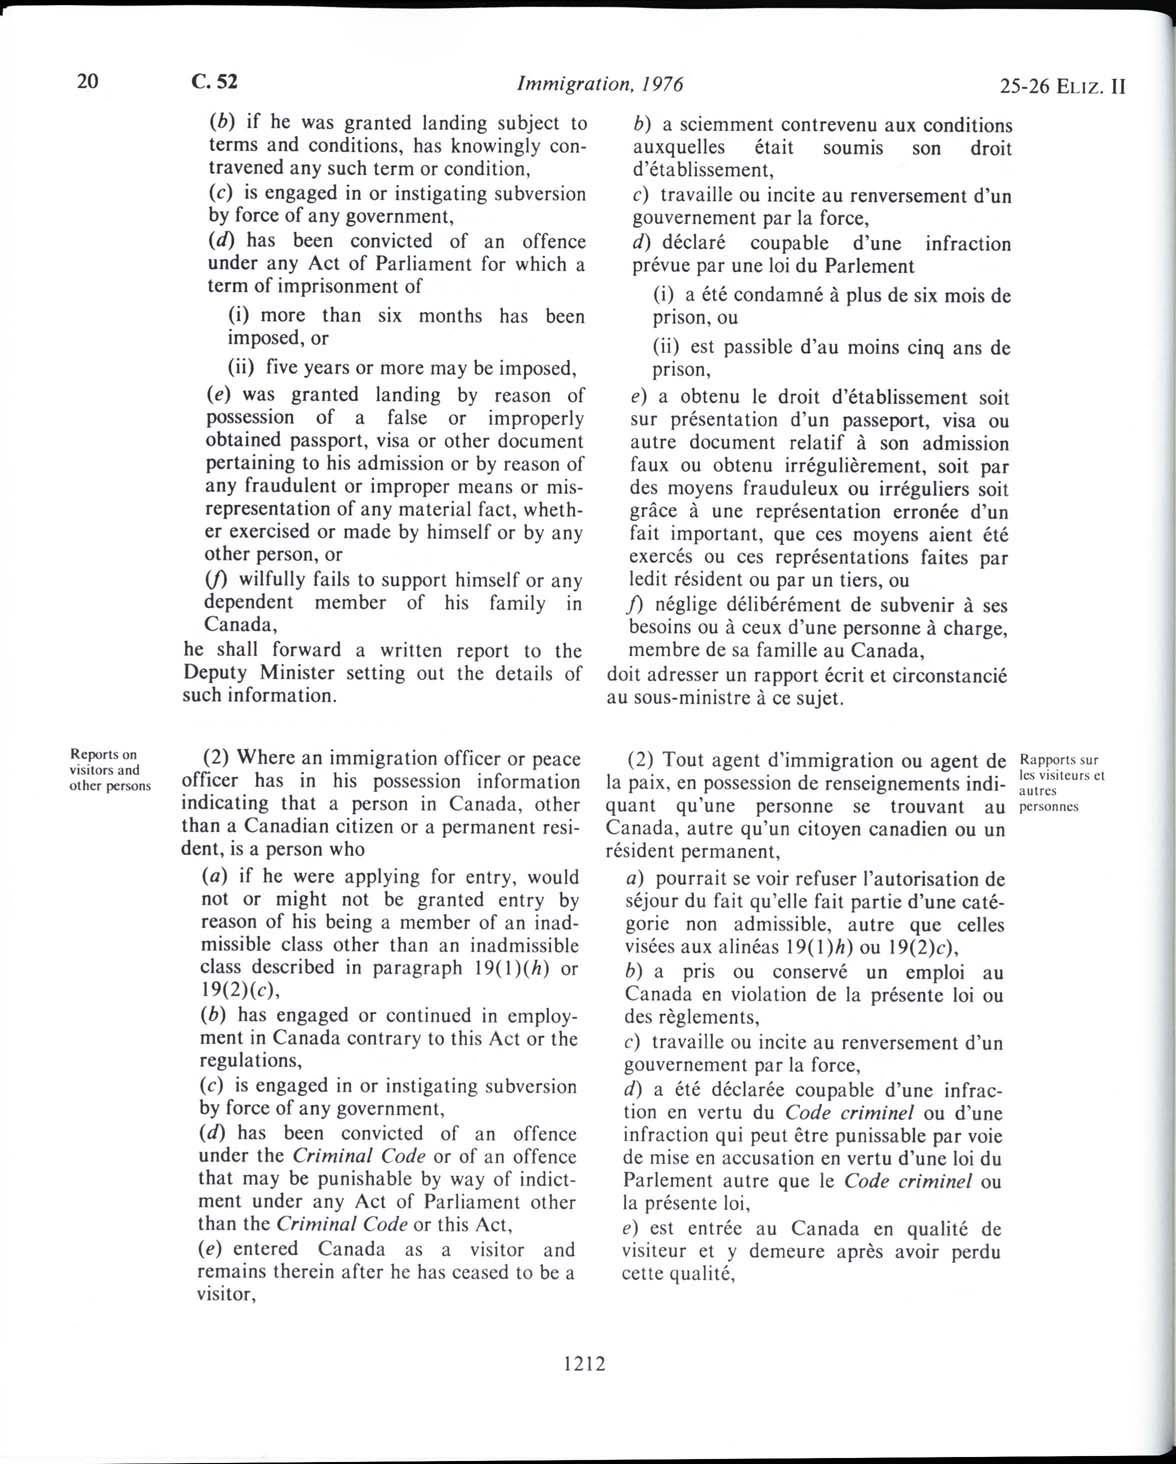 Page 1212 Loi sur l’immigration de 1976